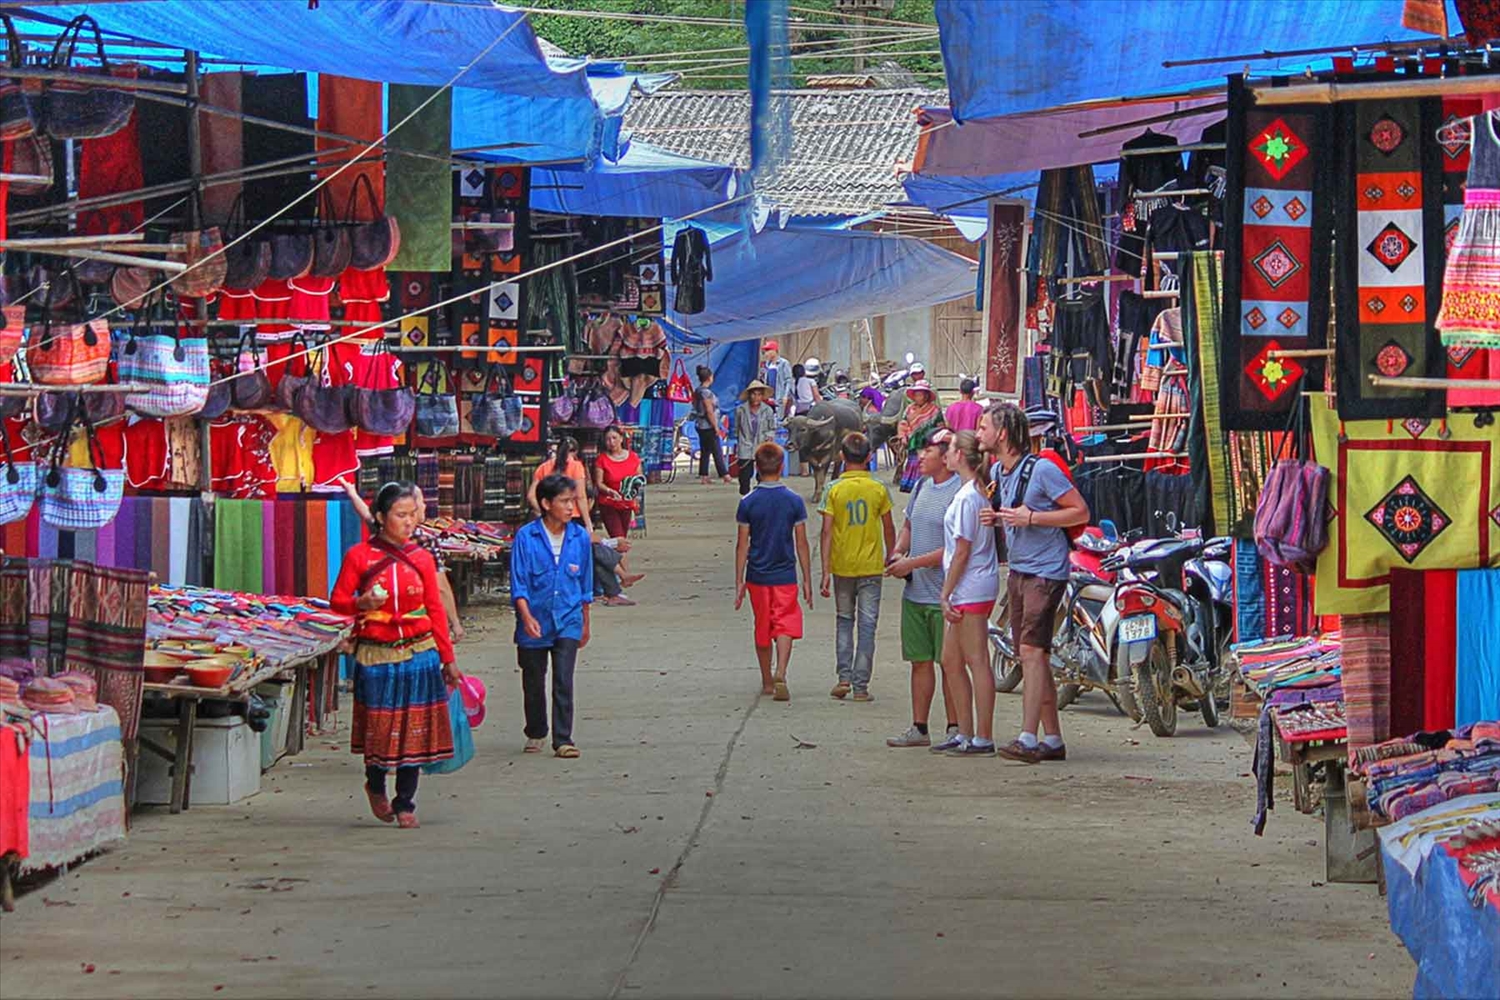 Chợ ở miền núi không chỉ là mua bán mà còn là nơi đồng bào các dân tộc giao lưu, chia sẻ. (Trong ảnh: Một góc chợ phiên Bắc Hà, Lào Cai).